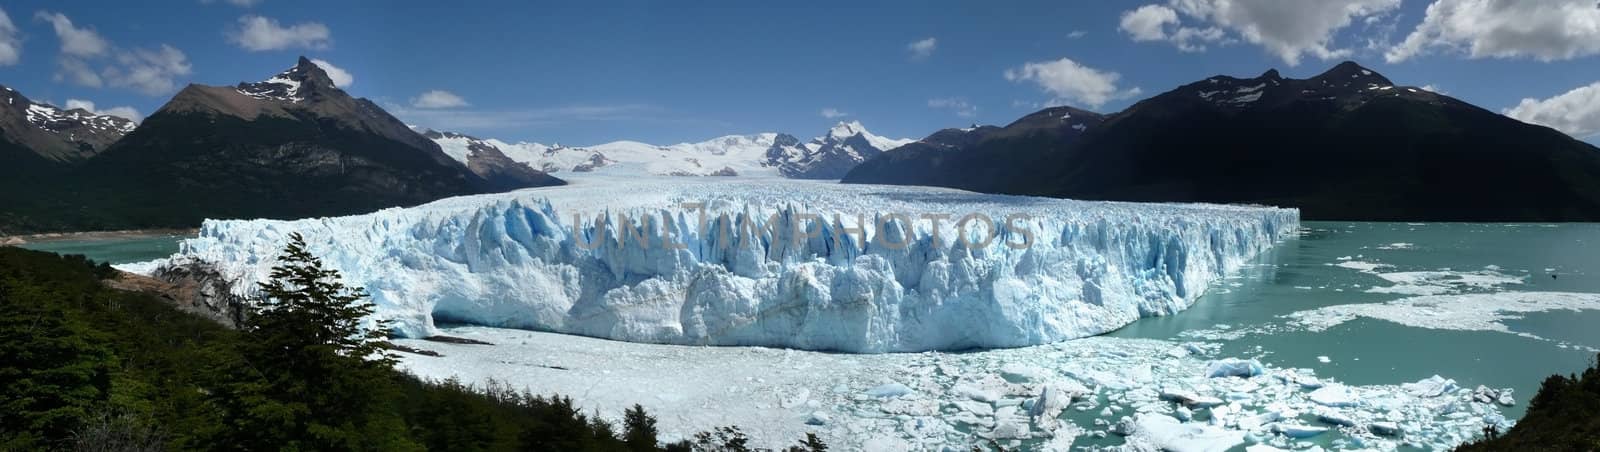 perito moreno glacier and icebergs in patagonia